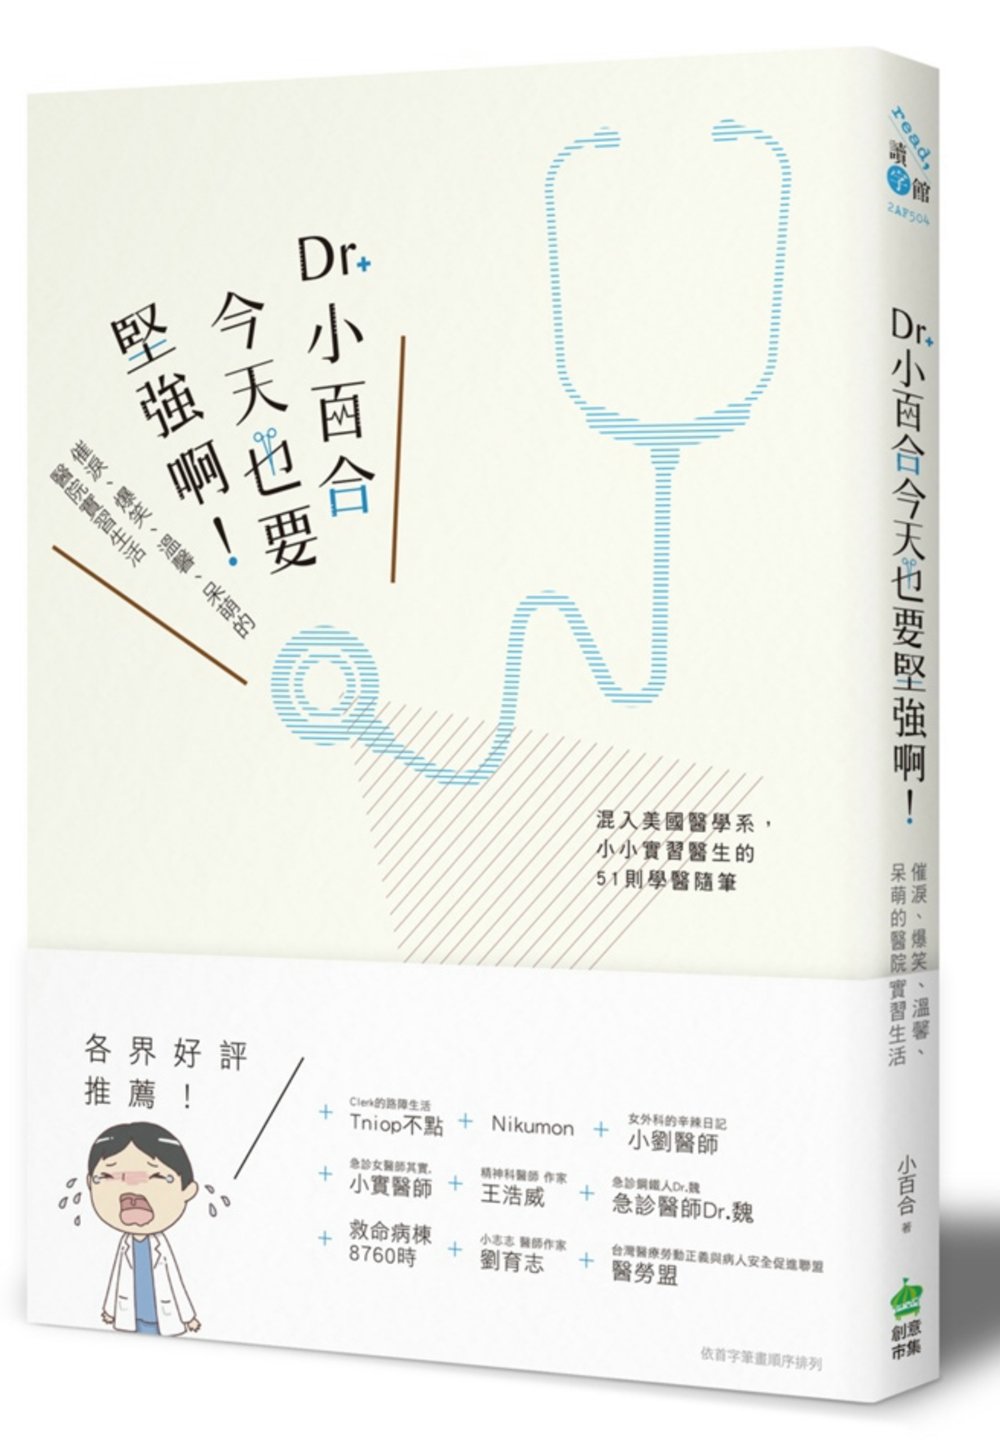 Dr. 小百合，今天也要堅強啊！催淚、爆笑、溫馨、呆萌的醫院實習生活